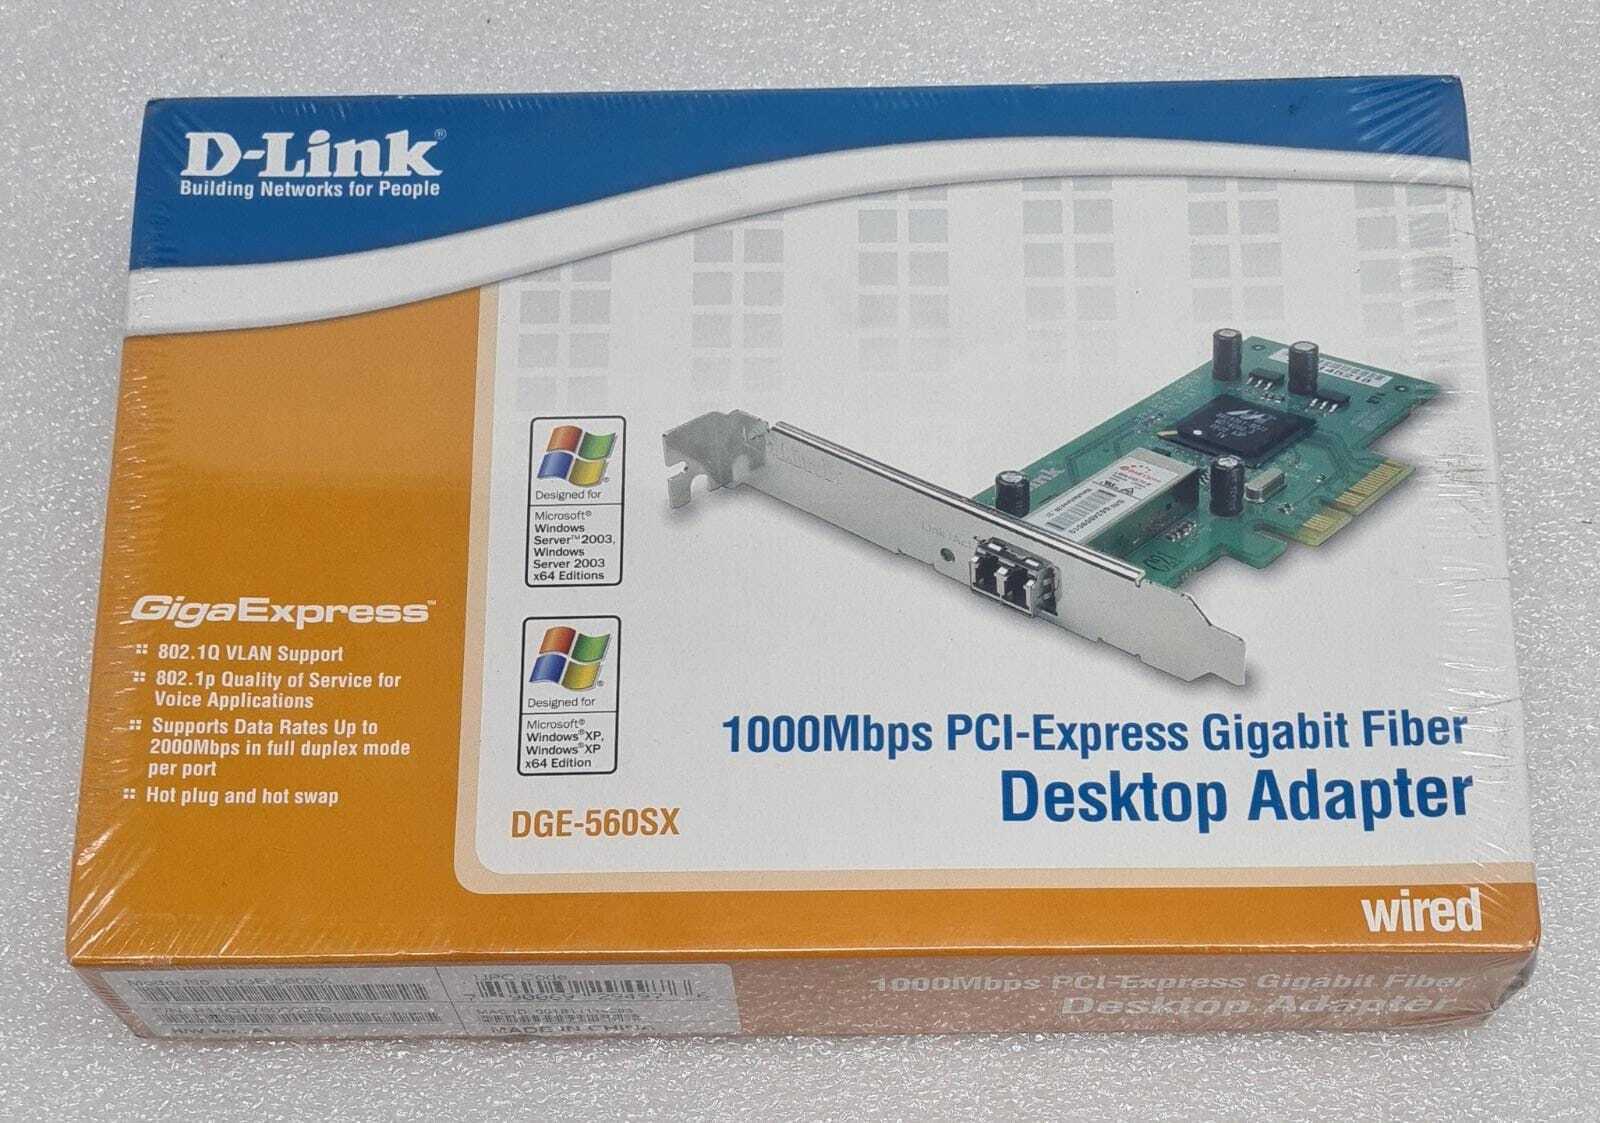 NEW SEALED - D-Link DGE-560SX 1000MBPS PCI‑Express Gigabit Fiber Desktop Adapter